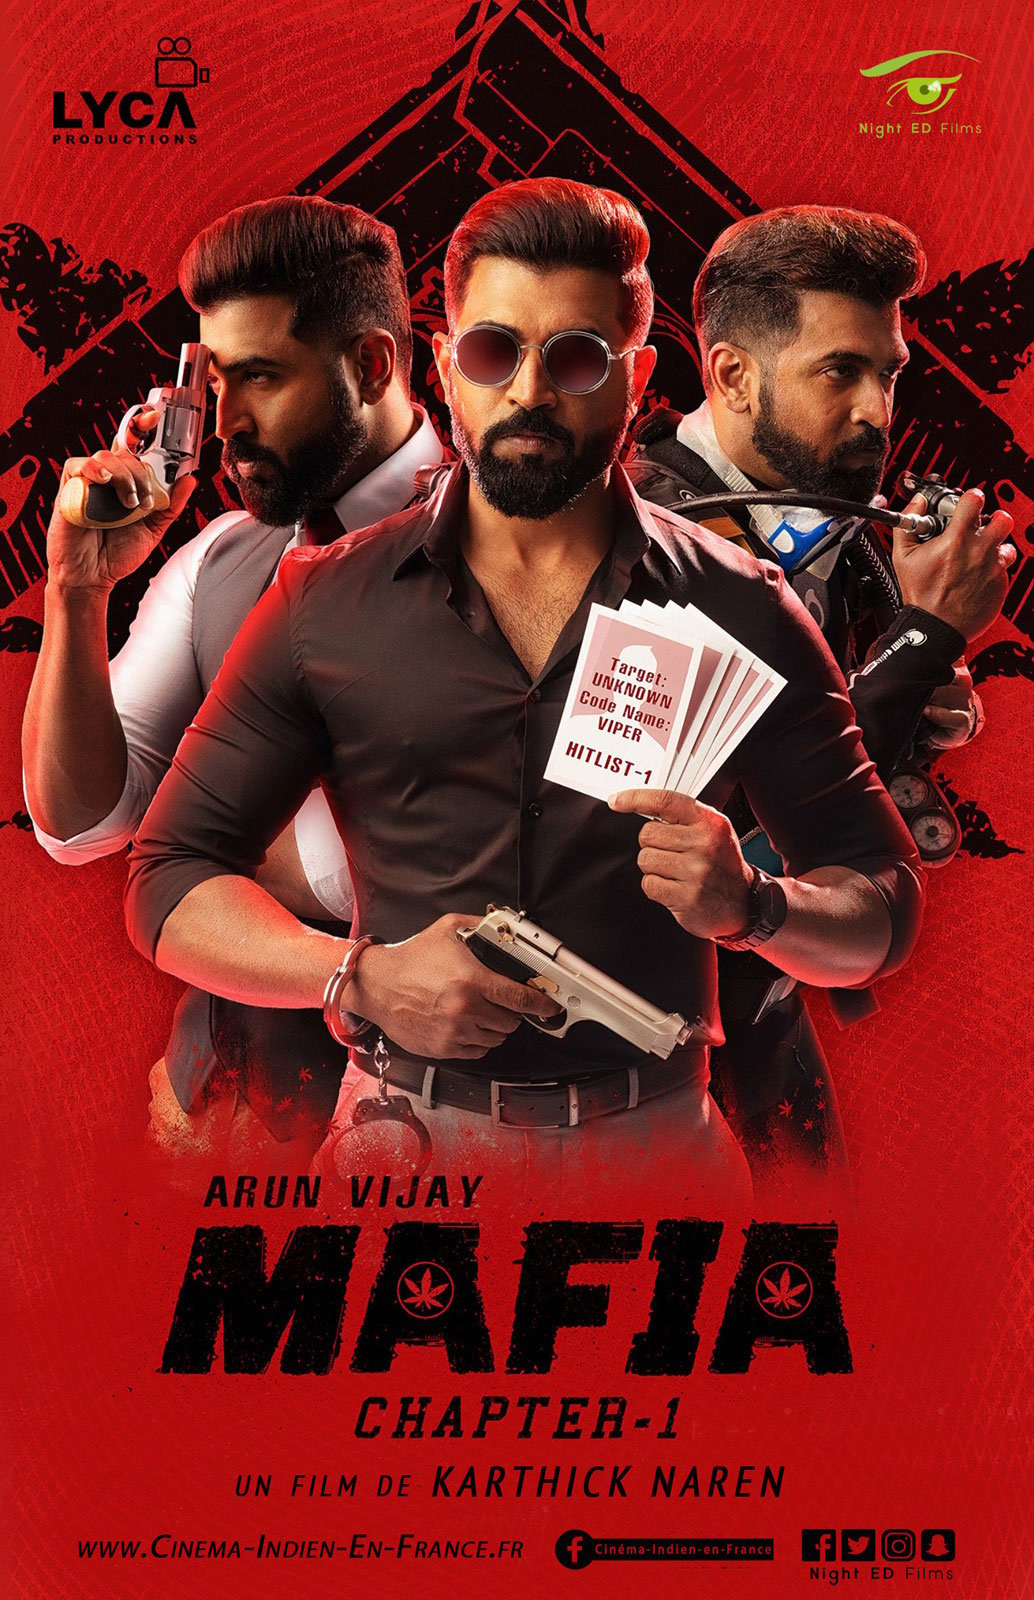 download the new Mafia: Street Fight